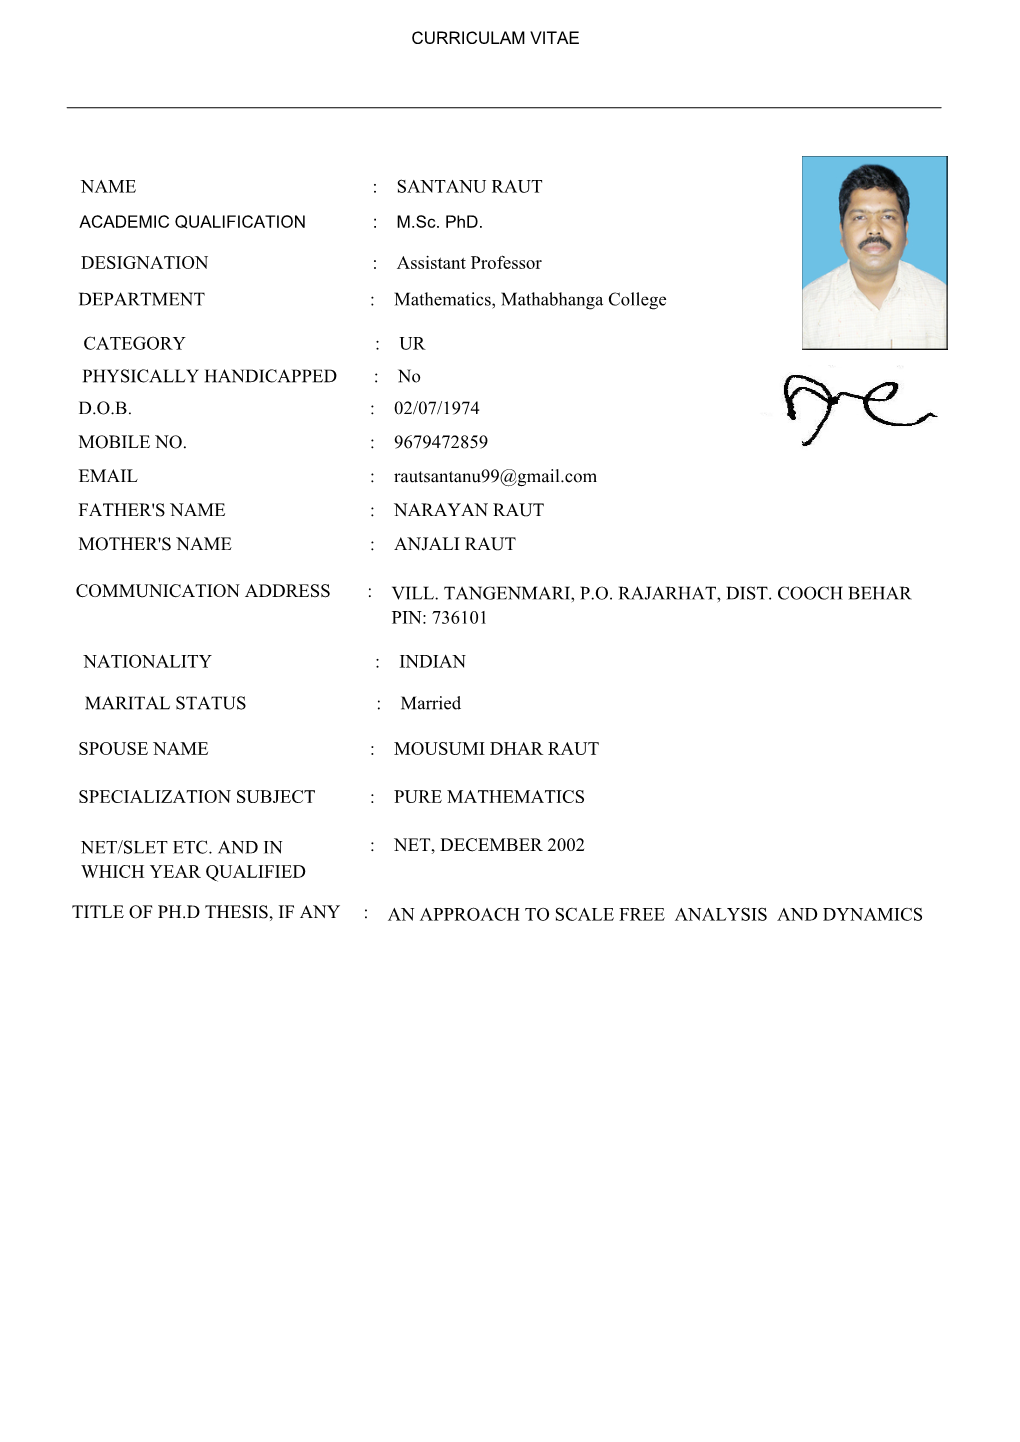 DESIGNATION : Assistant Professor DEPARTMENT : Mathematics, Mathabhanga College